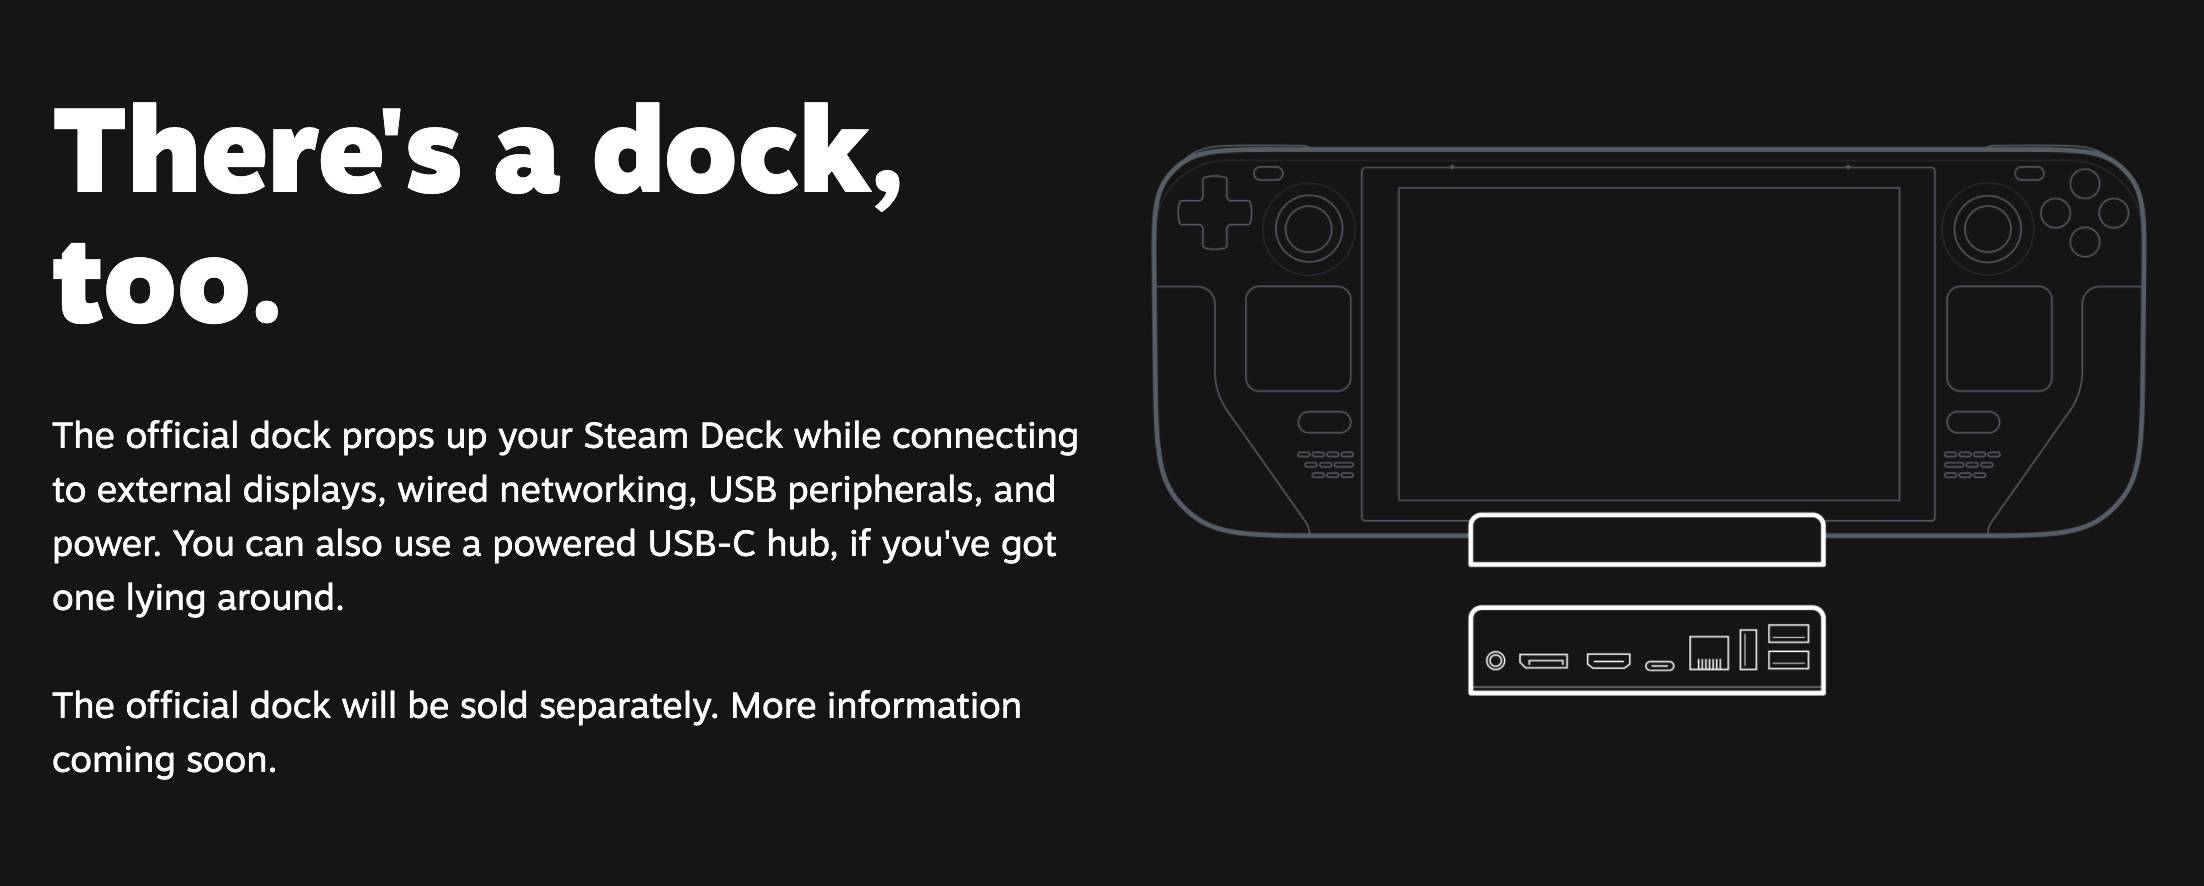 Valve tritt in den PC-Handheld-Markt ein, kann Steam Deck wie Switch populär werden? - iShot2021 07 18 00.58.52